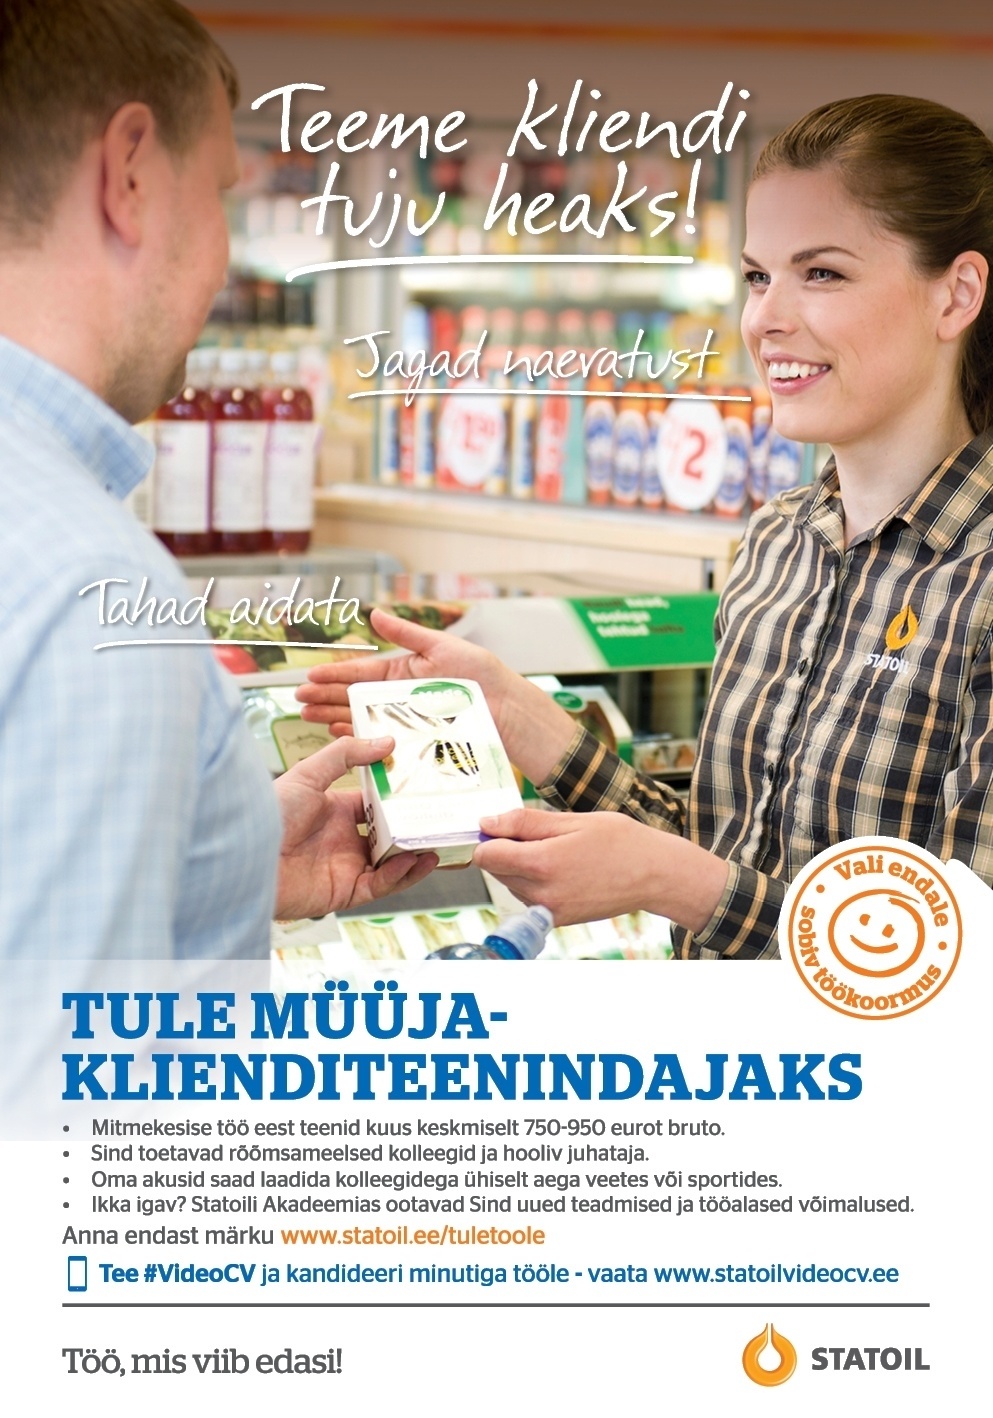 Circle K Eesti AS Müüja-klienditeenindaja Balti Jaama, Linnahalli teenindusjaama